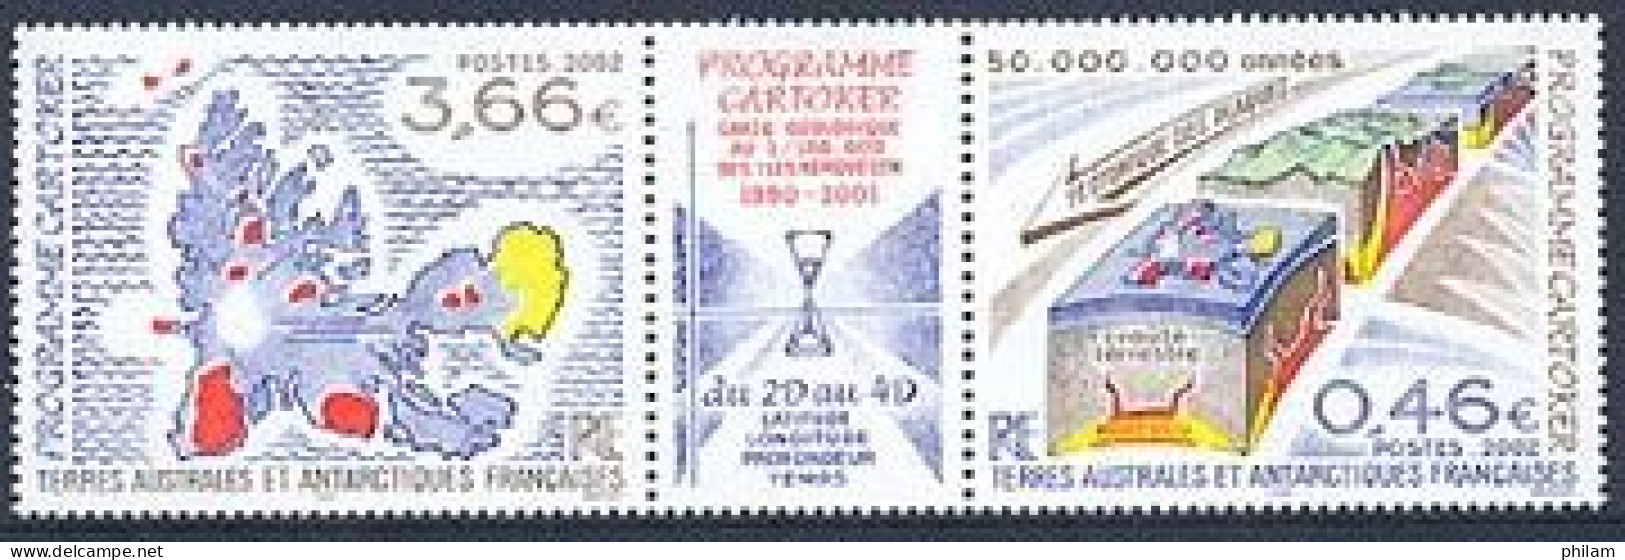 TAAF 2002 - Programe Cartoker - Géologie - Nuovi